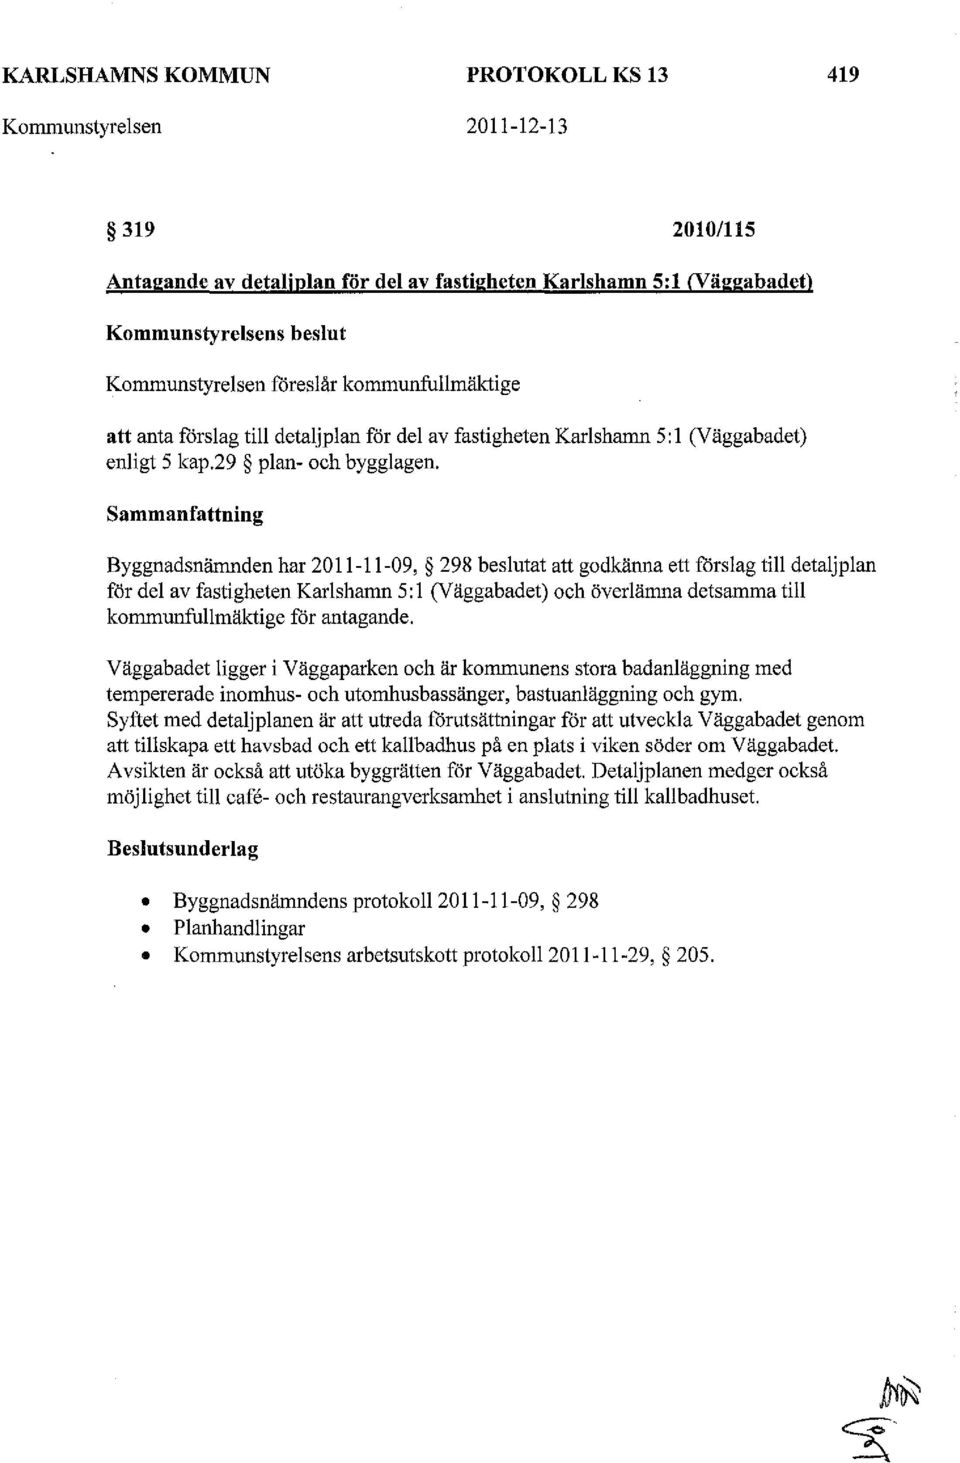 Sammanfattning Byggnadsnämnden har 2011-11-09, 298 beslutat att godkänna ett fårslag till detaljplan för del av fastigheten Karlshamn 5: l (Väggabadet) och överlämna detsamma till kommunfullmäktige